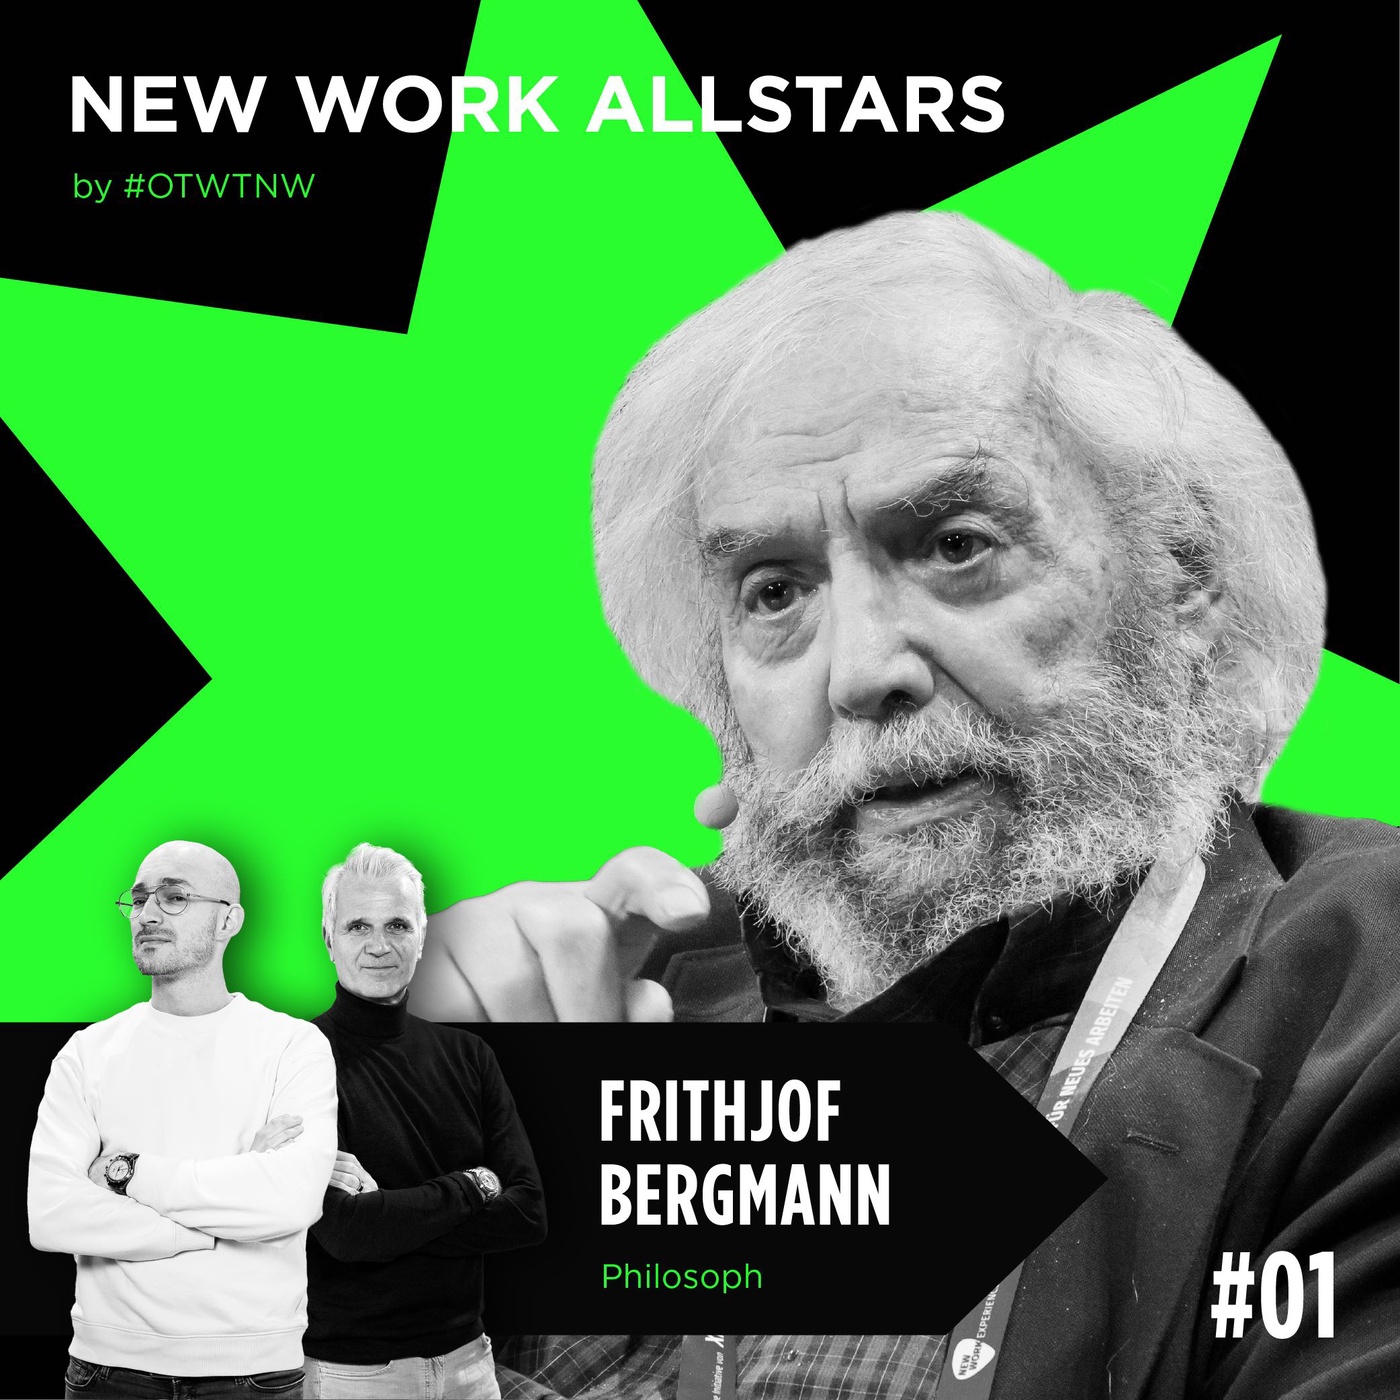 #01 Frithjof Bergmann | New Work Allstars by OTWTNW | Philosoph und Begründer der New Work Bewegung